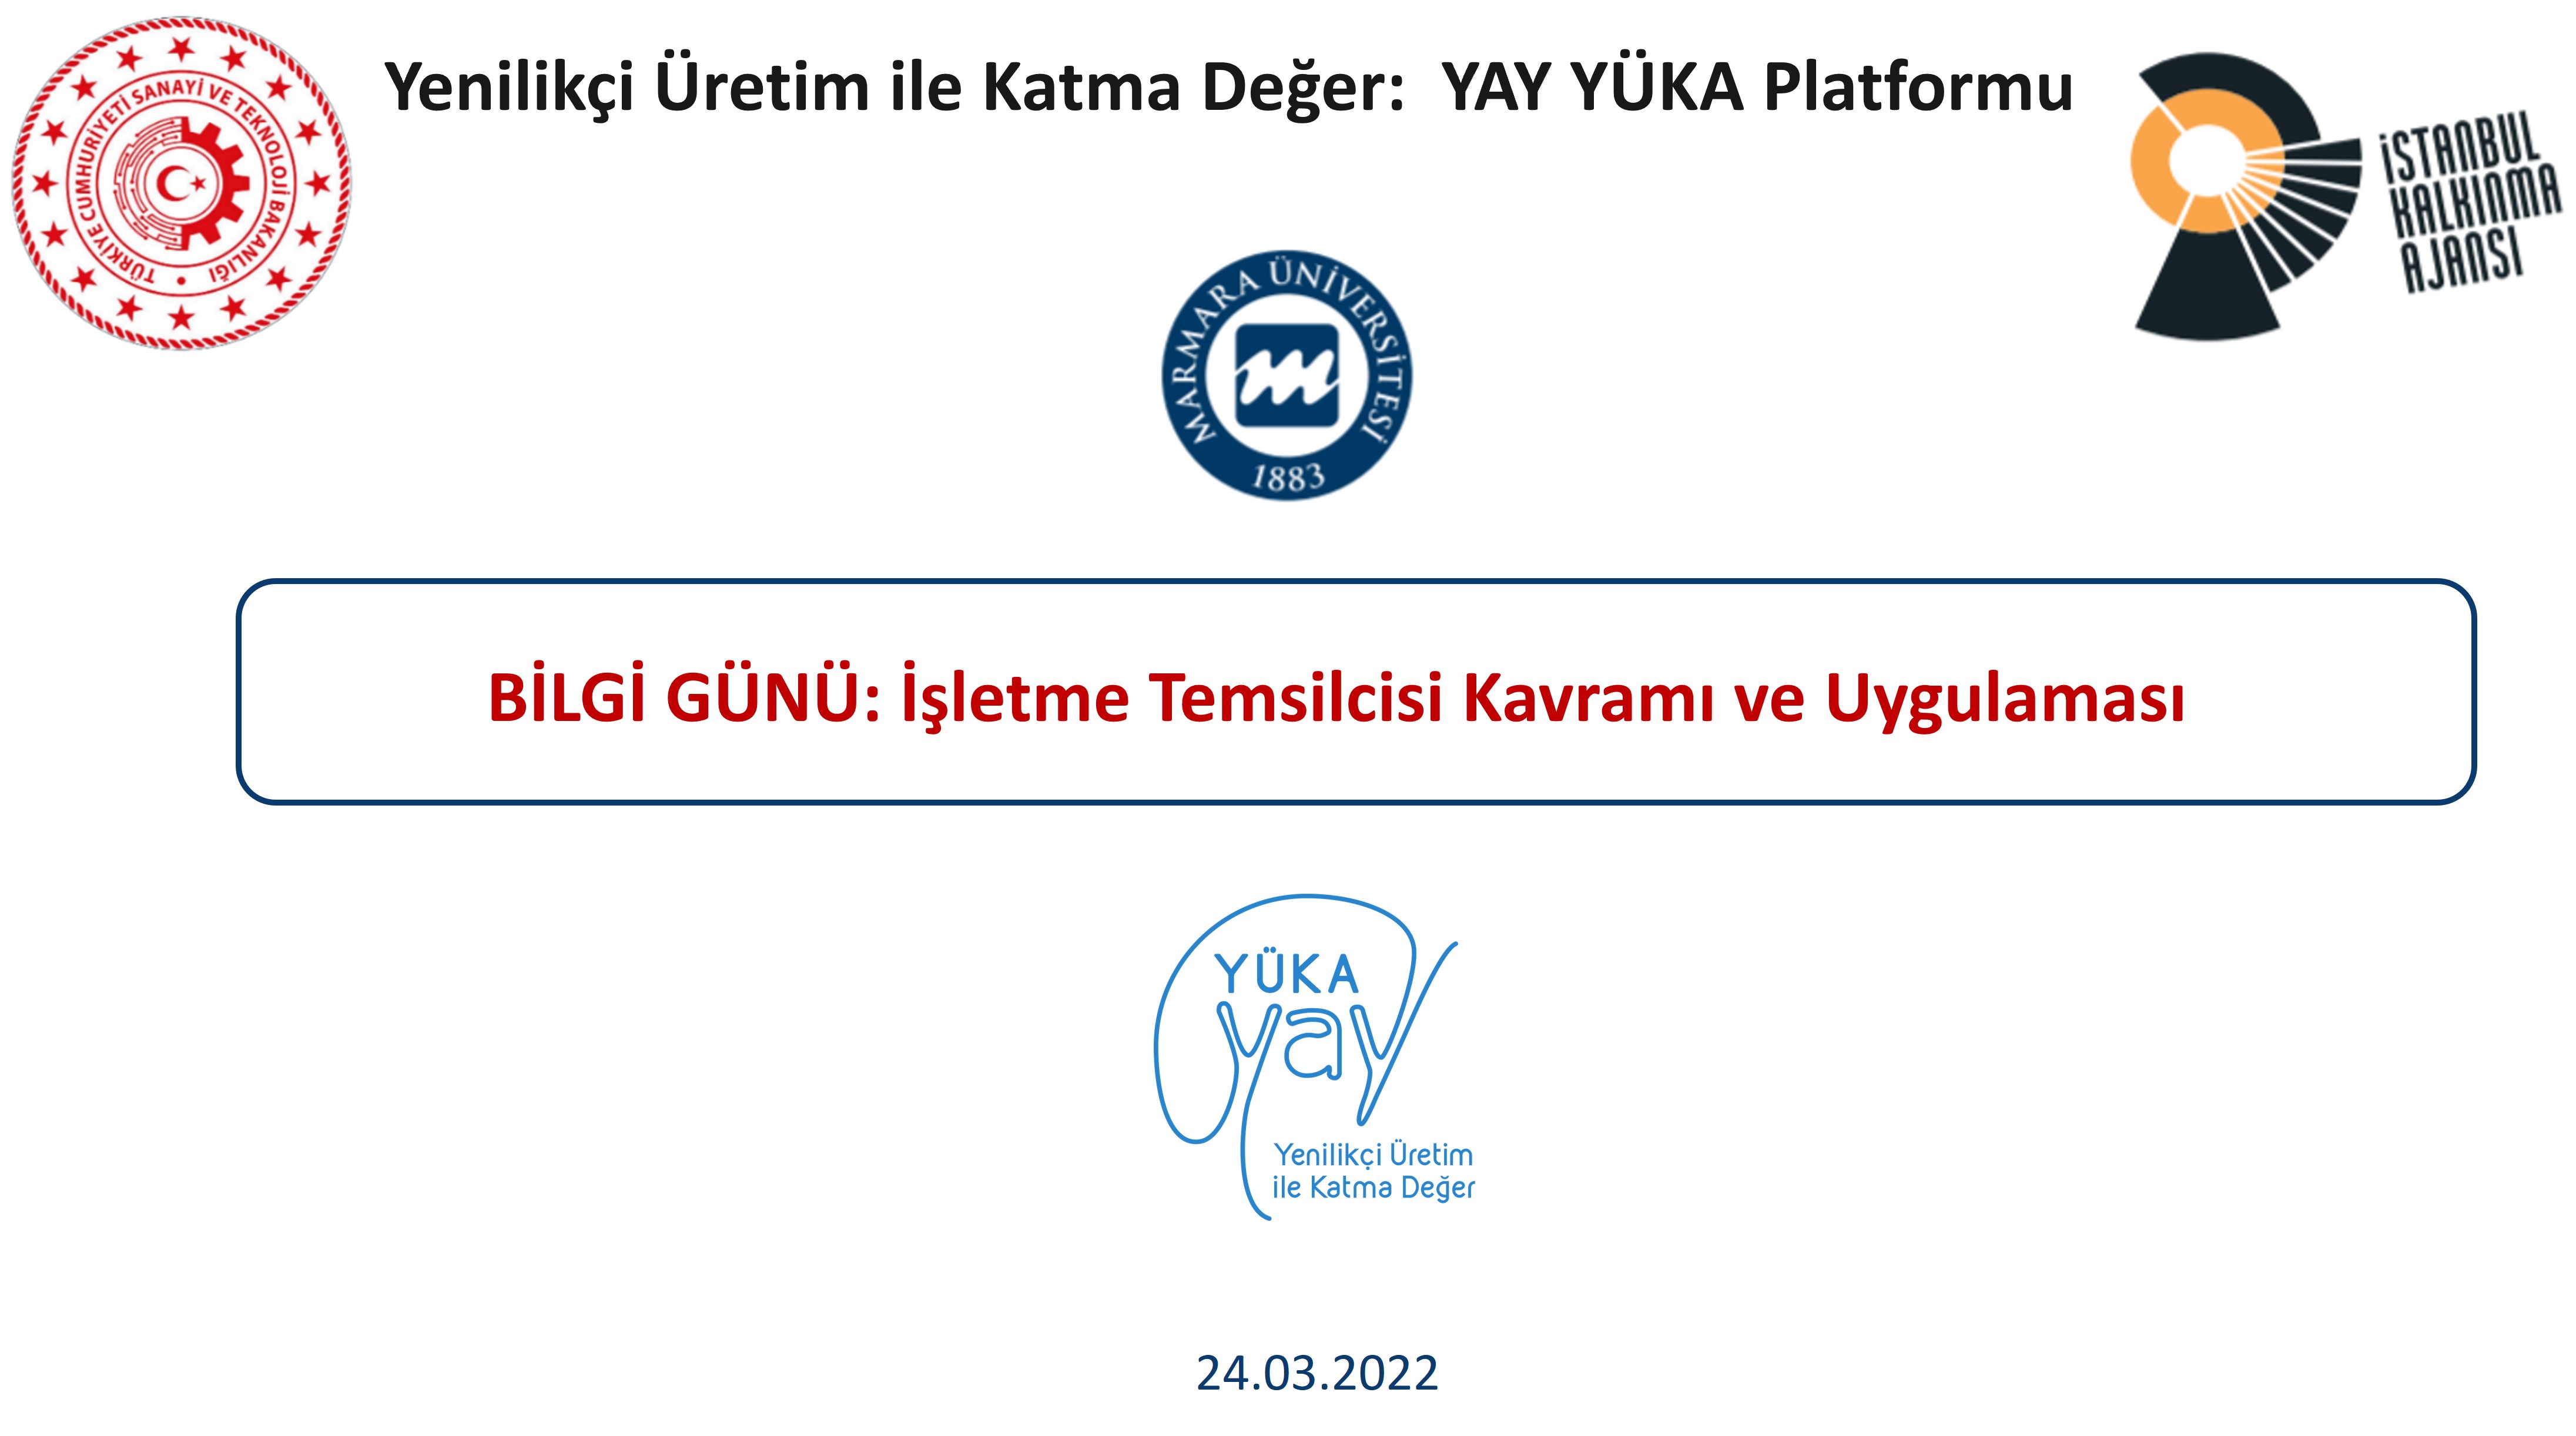 YAY-YUKA Platform Information Day Held